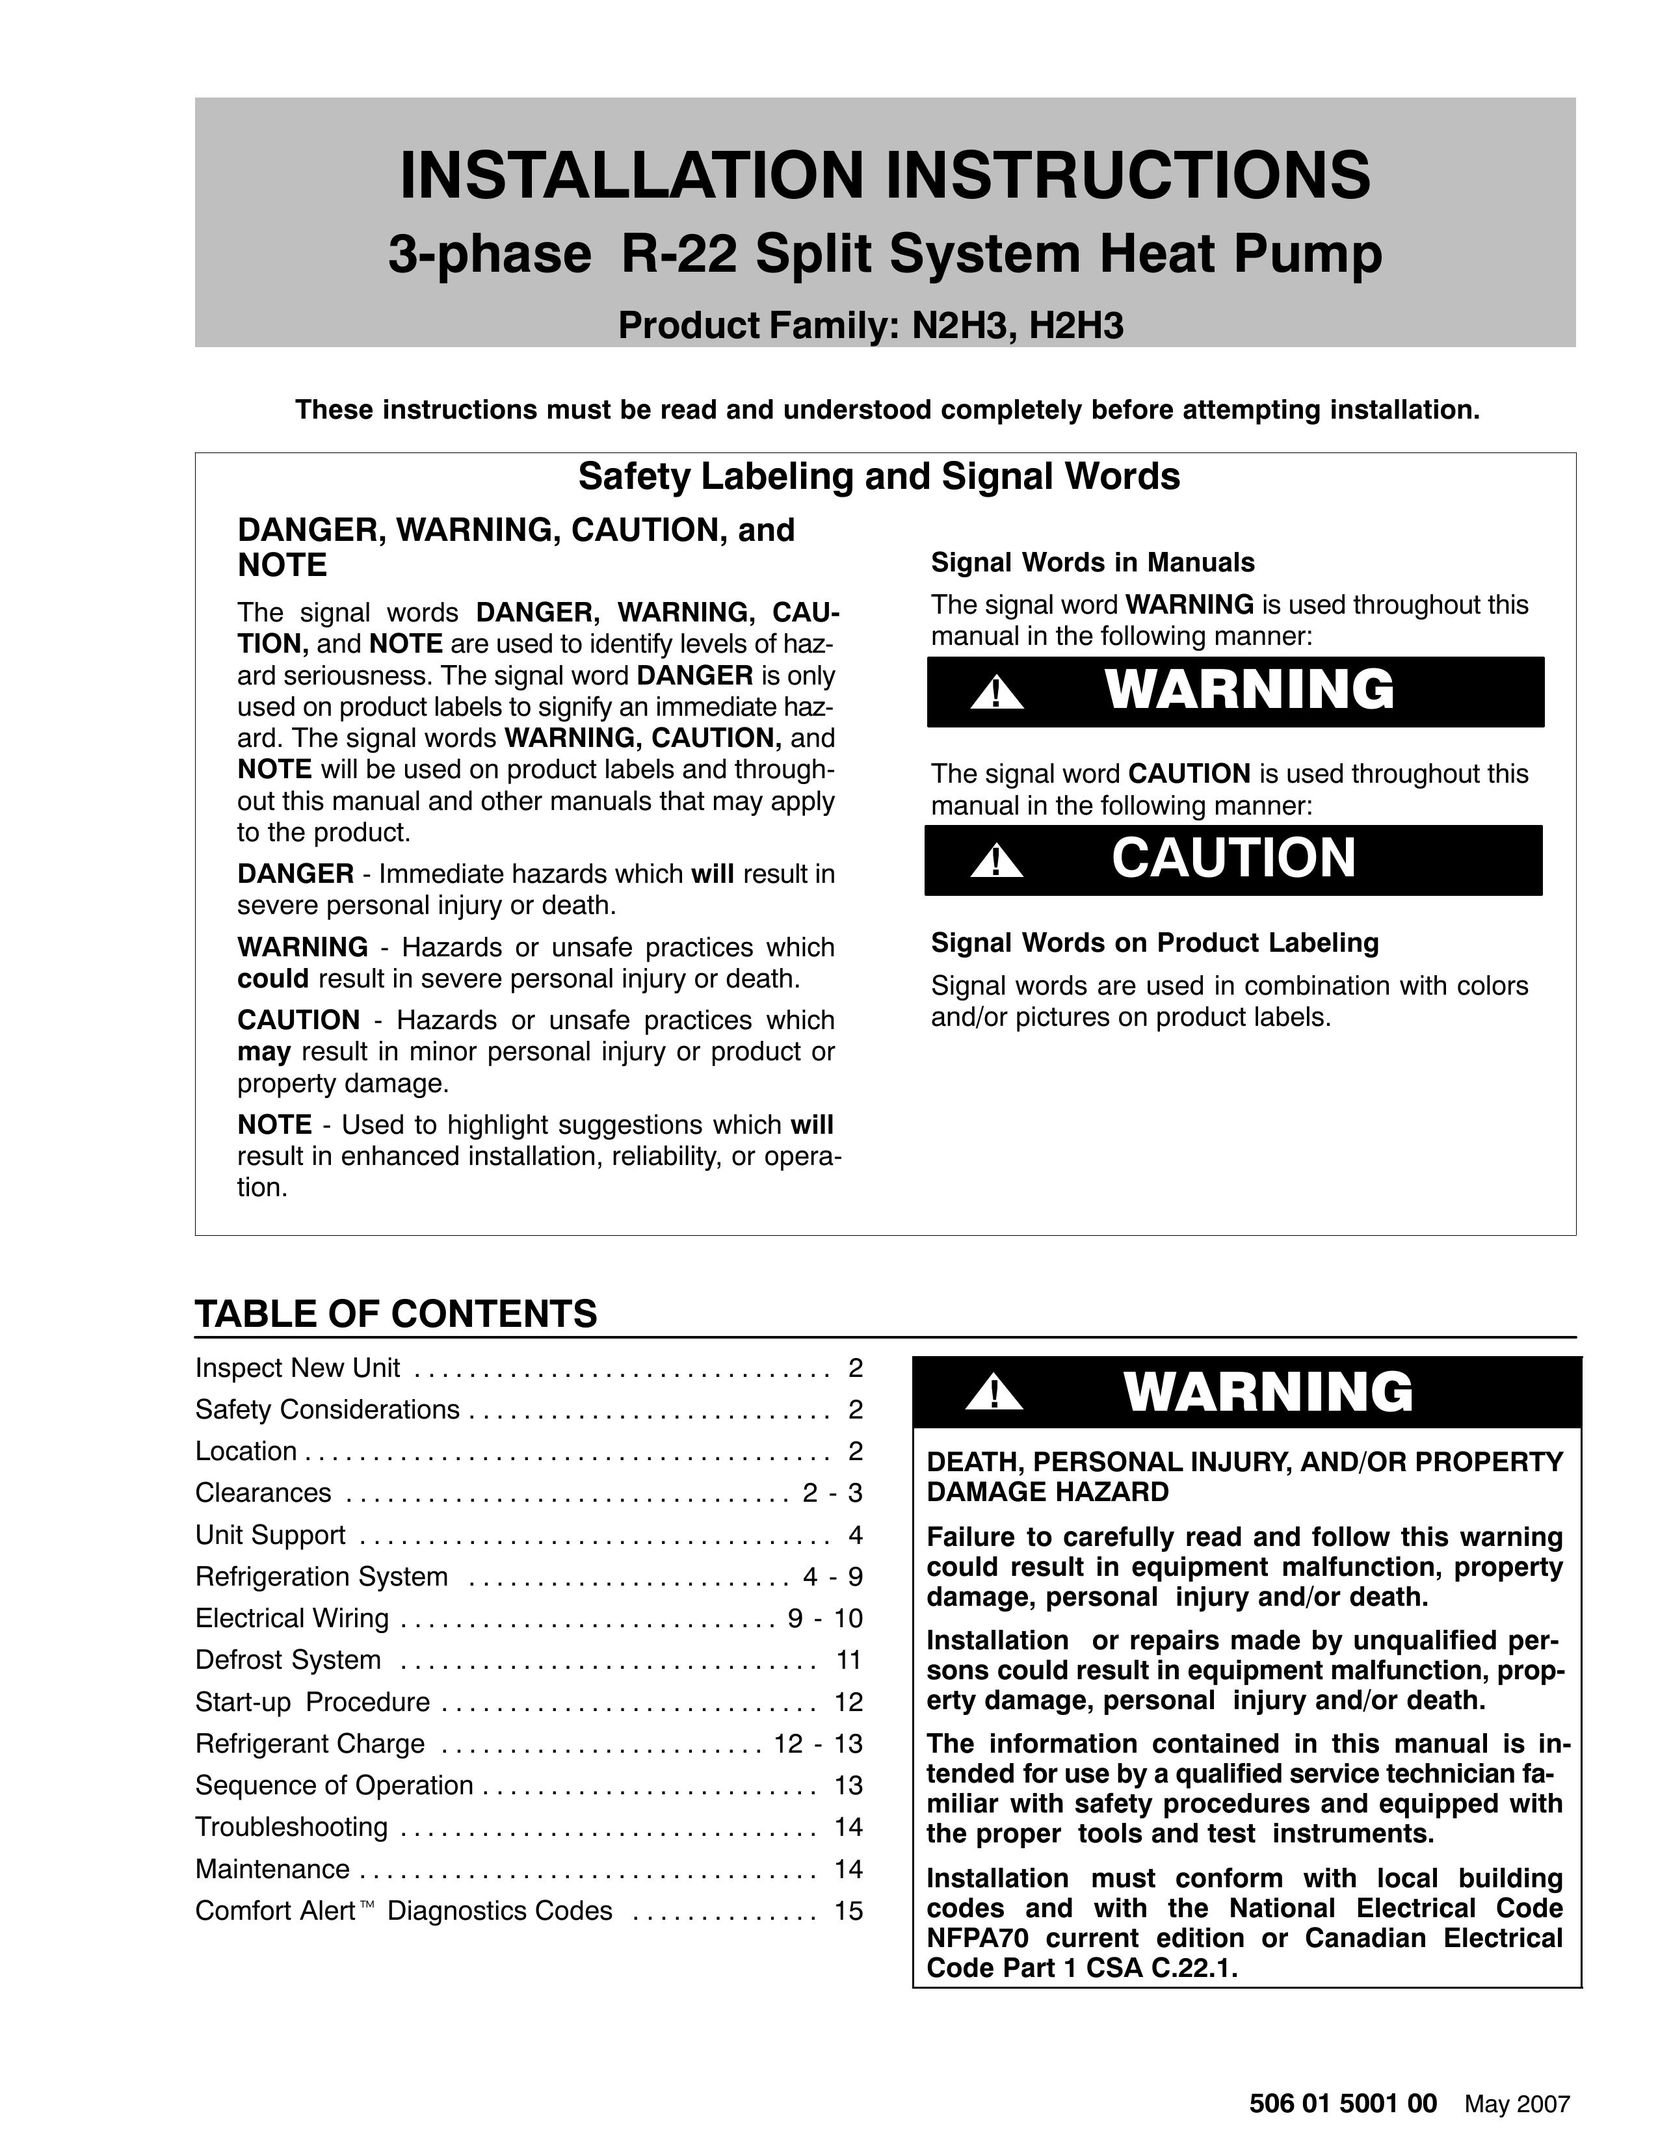 HP (Hewlett-Packard) H2H3 Heat Pump User Manual